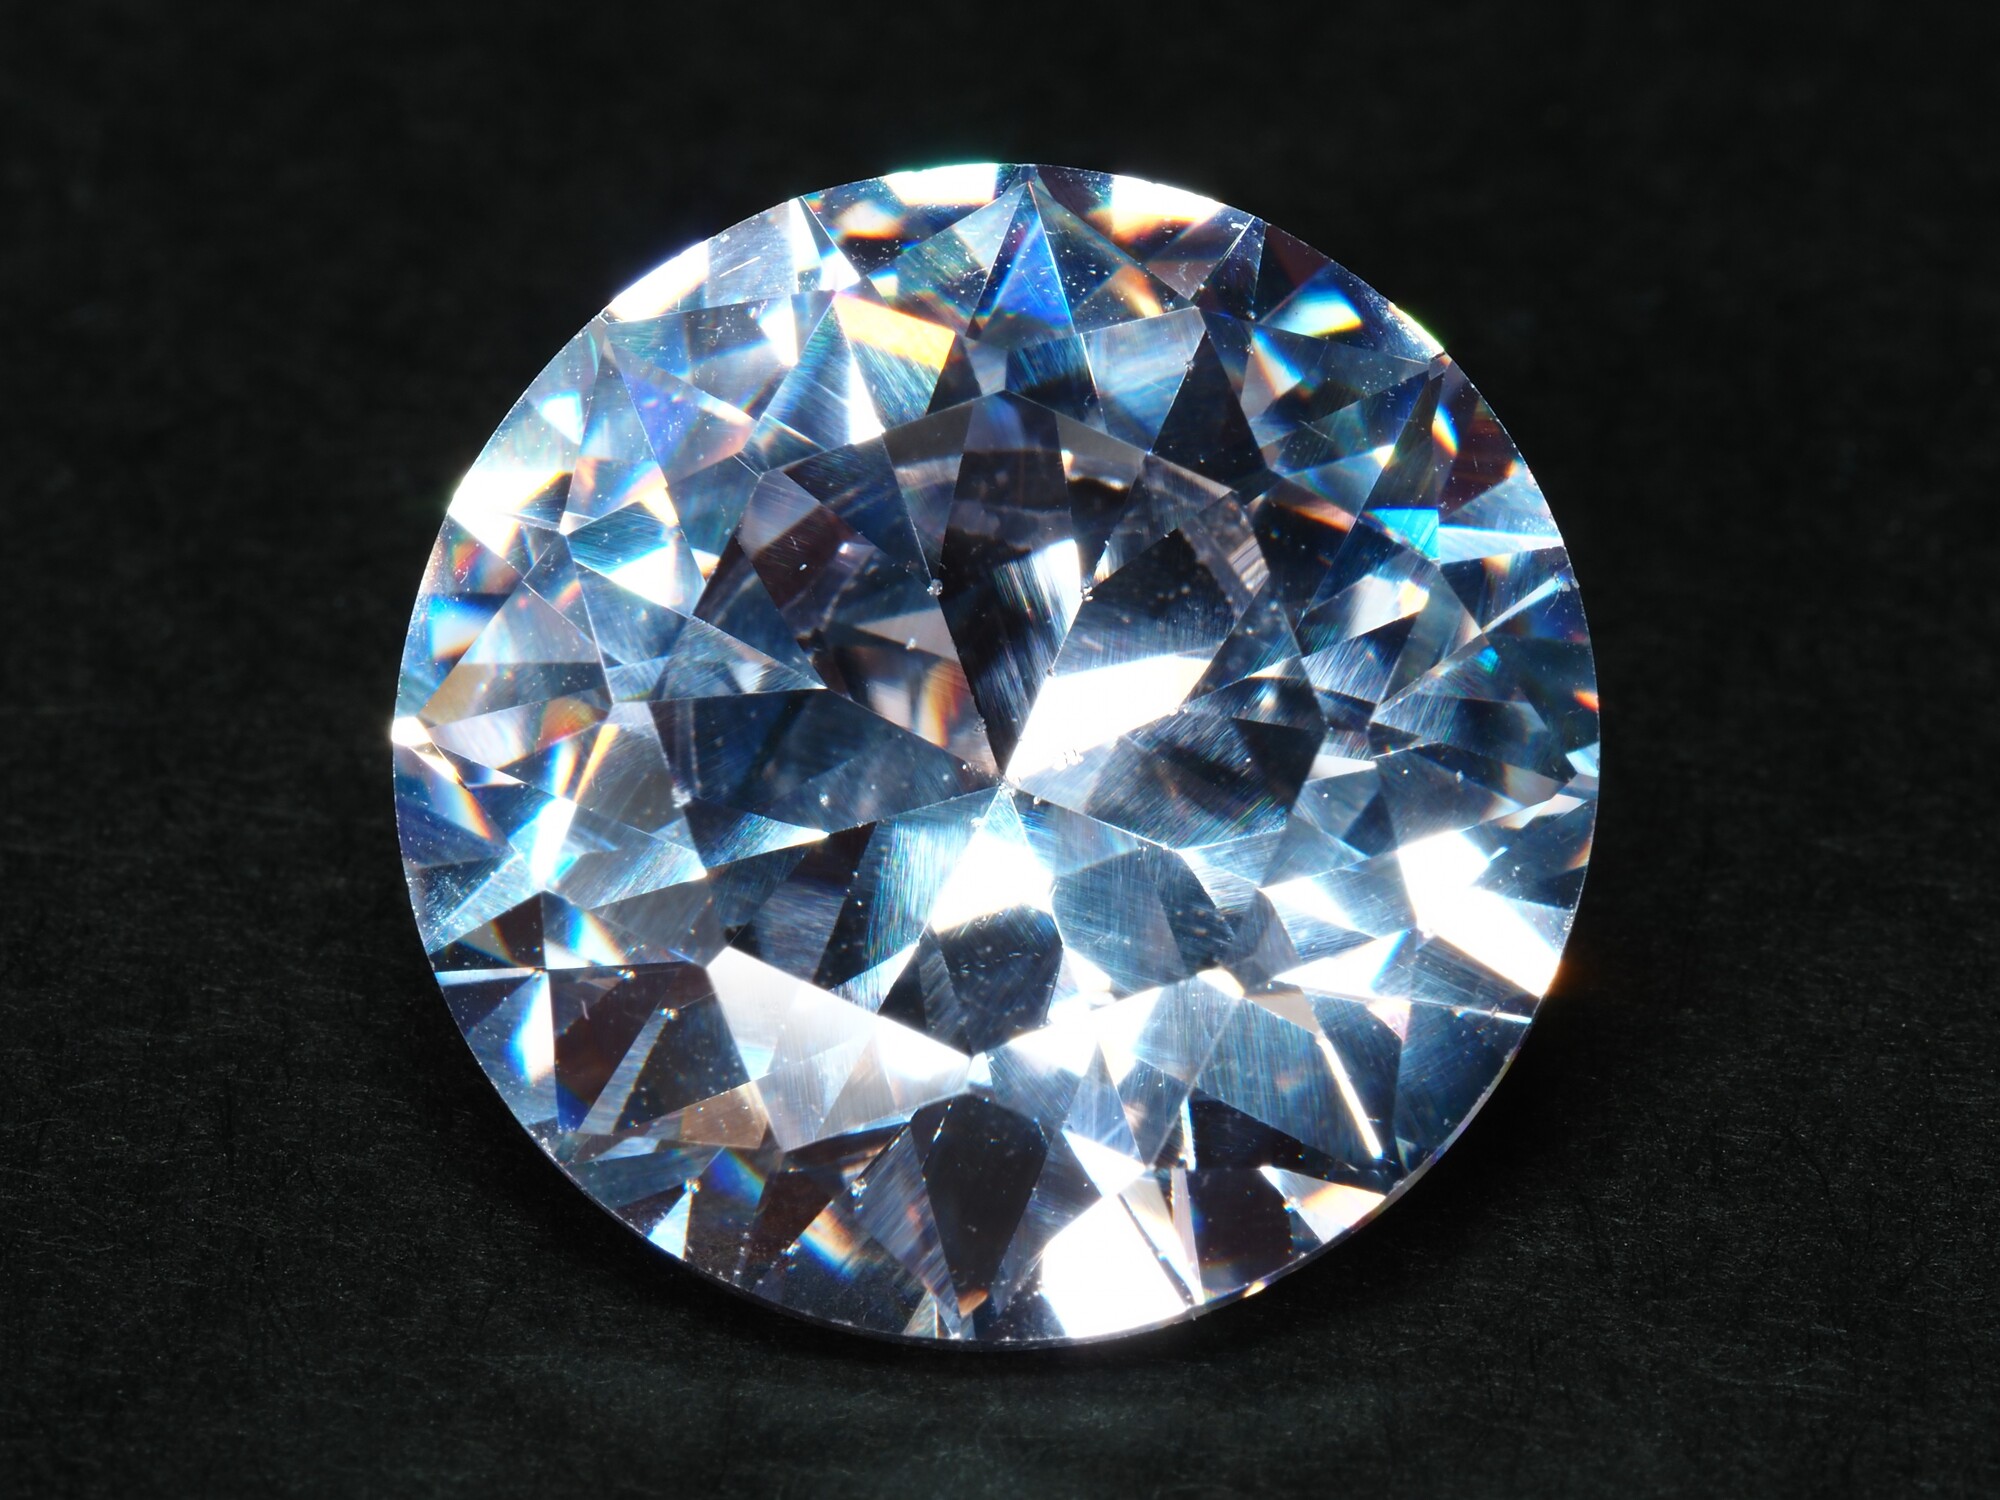 キュービックジルコニアとは？ダイヤモンドと何が違う？ 